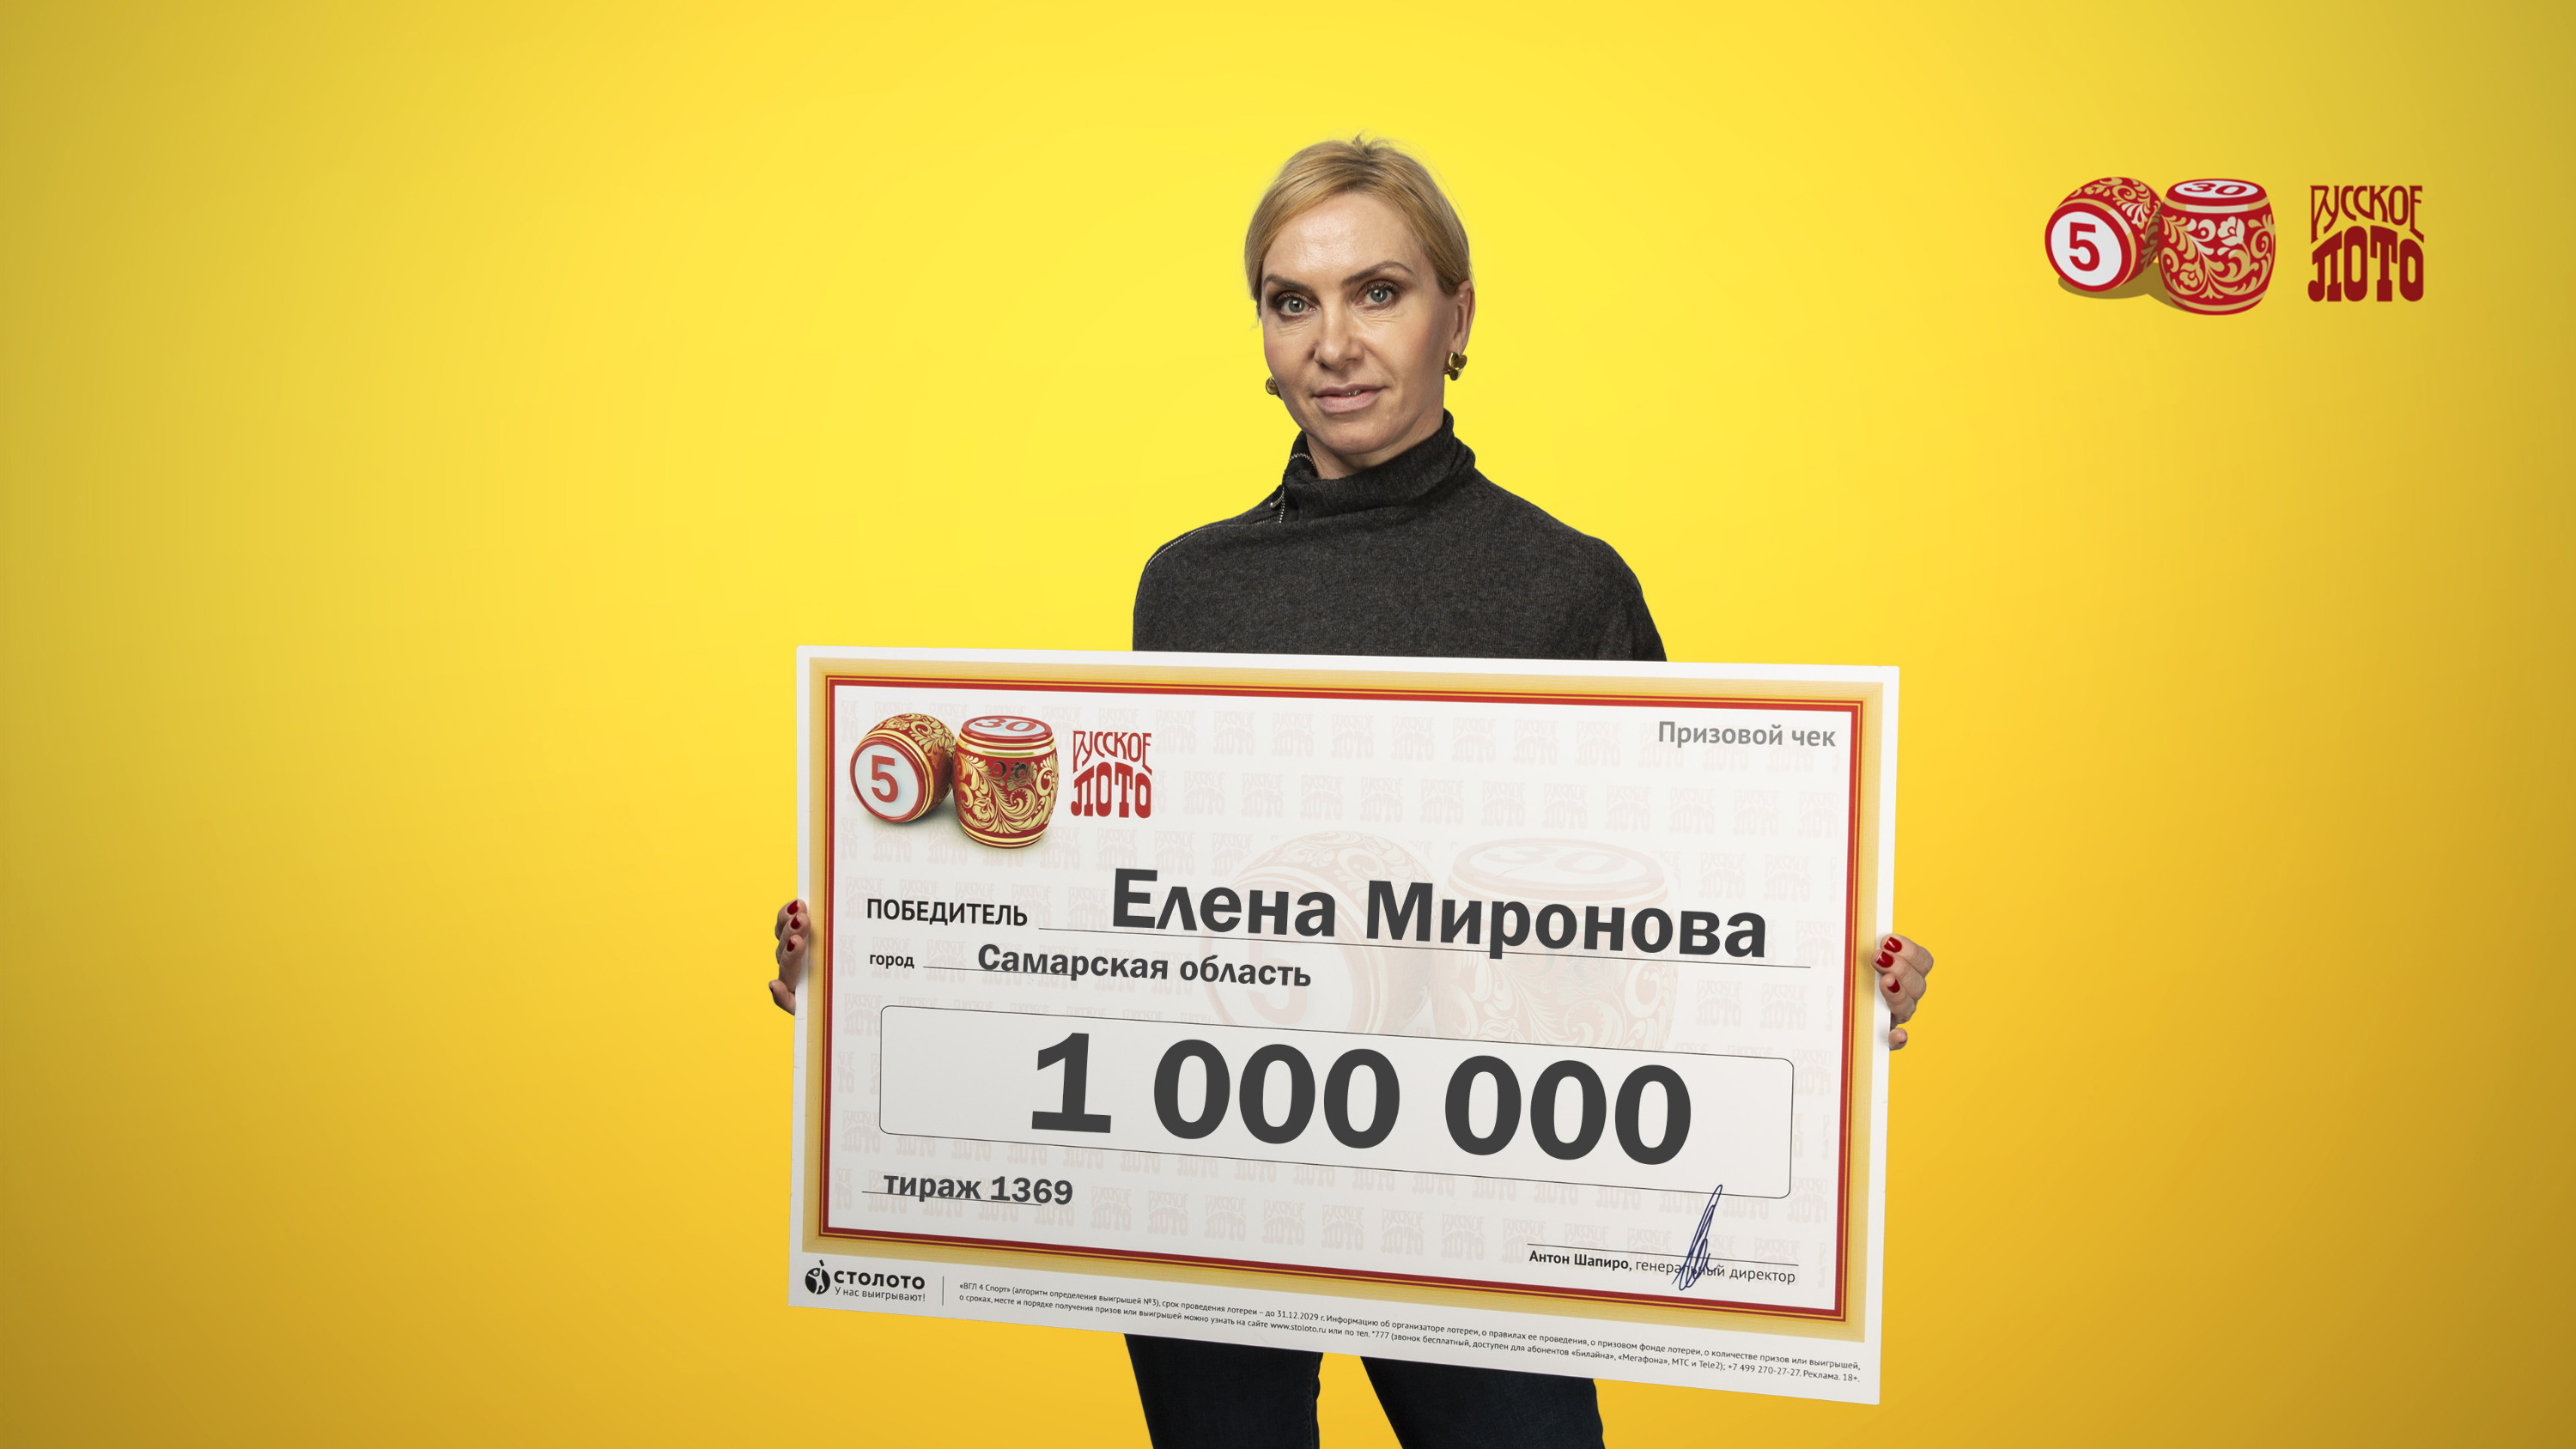 Комсомольская правда лотерея выборы. Телеведущая русское лото. Выиграл в лотерею. Выигрыш в русское лото. Выигрыш в лотерею фото.